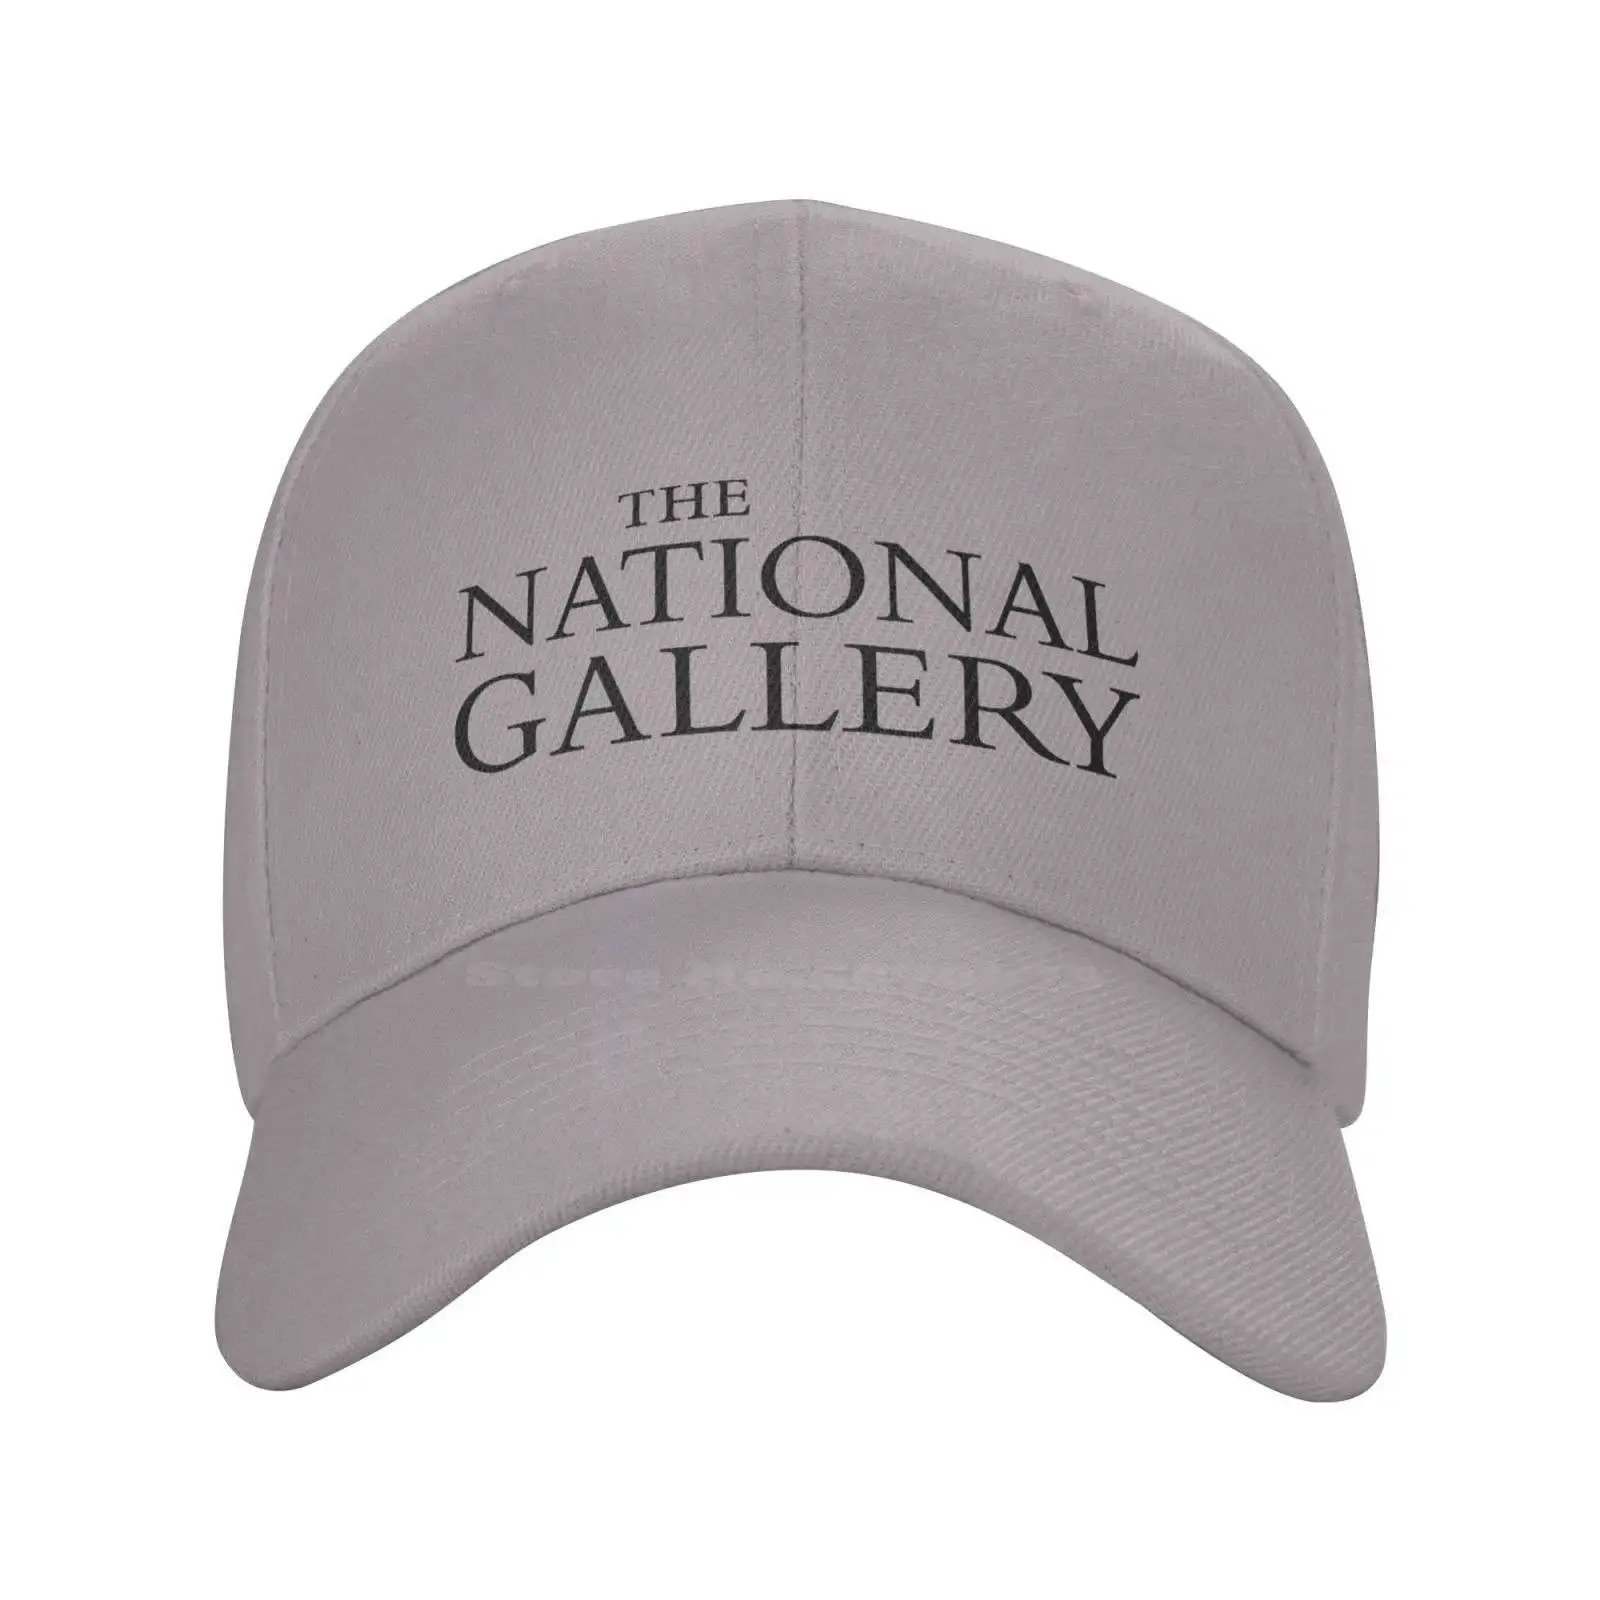 

Джинсовая бейсбольная кепка высшего качества с логотипом Национальной галереи